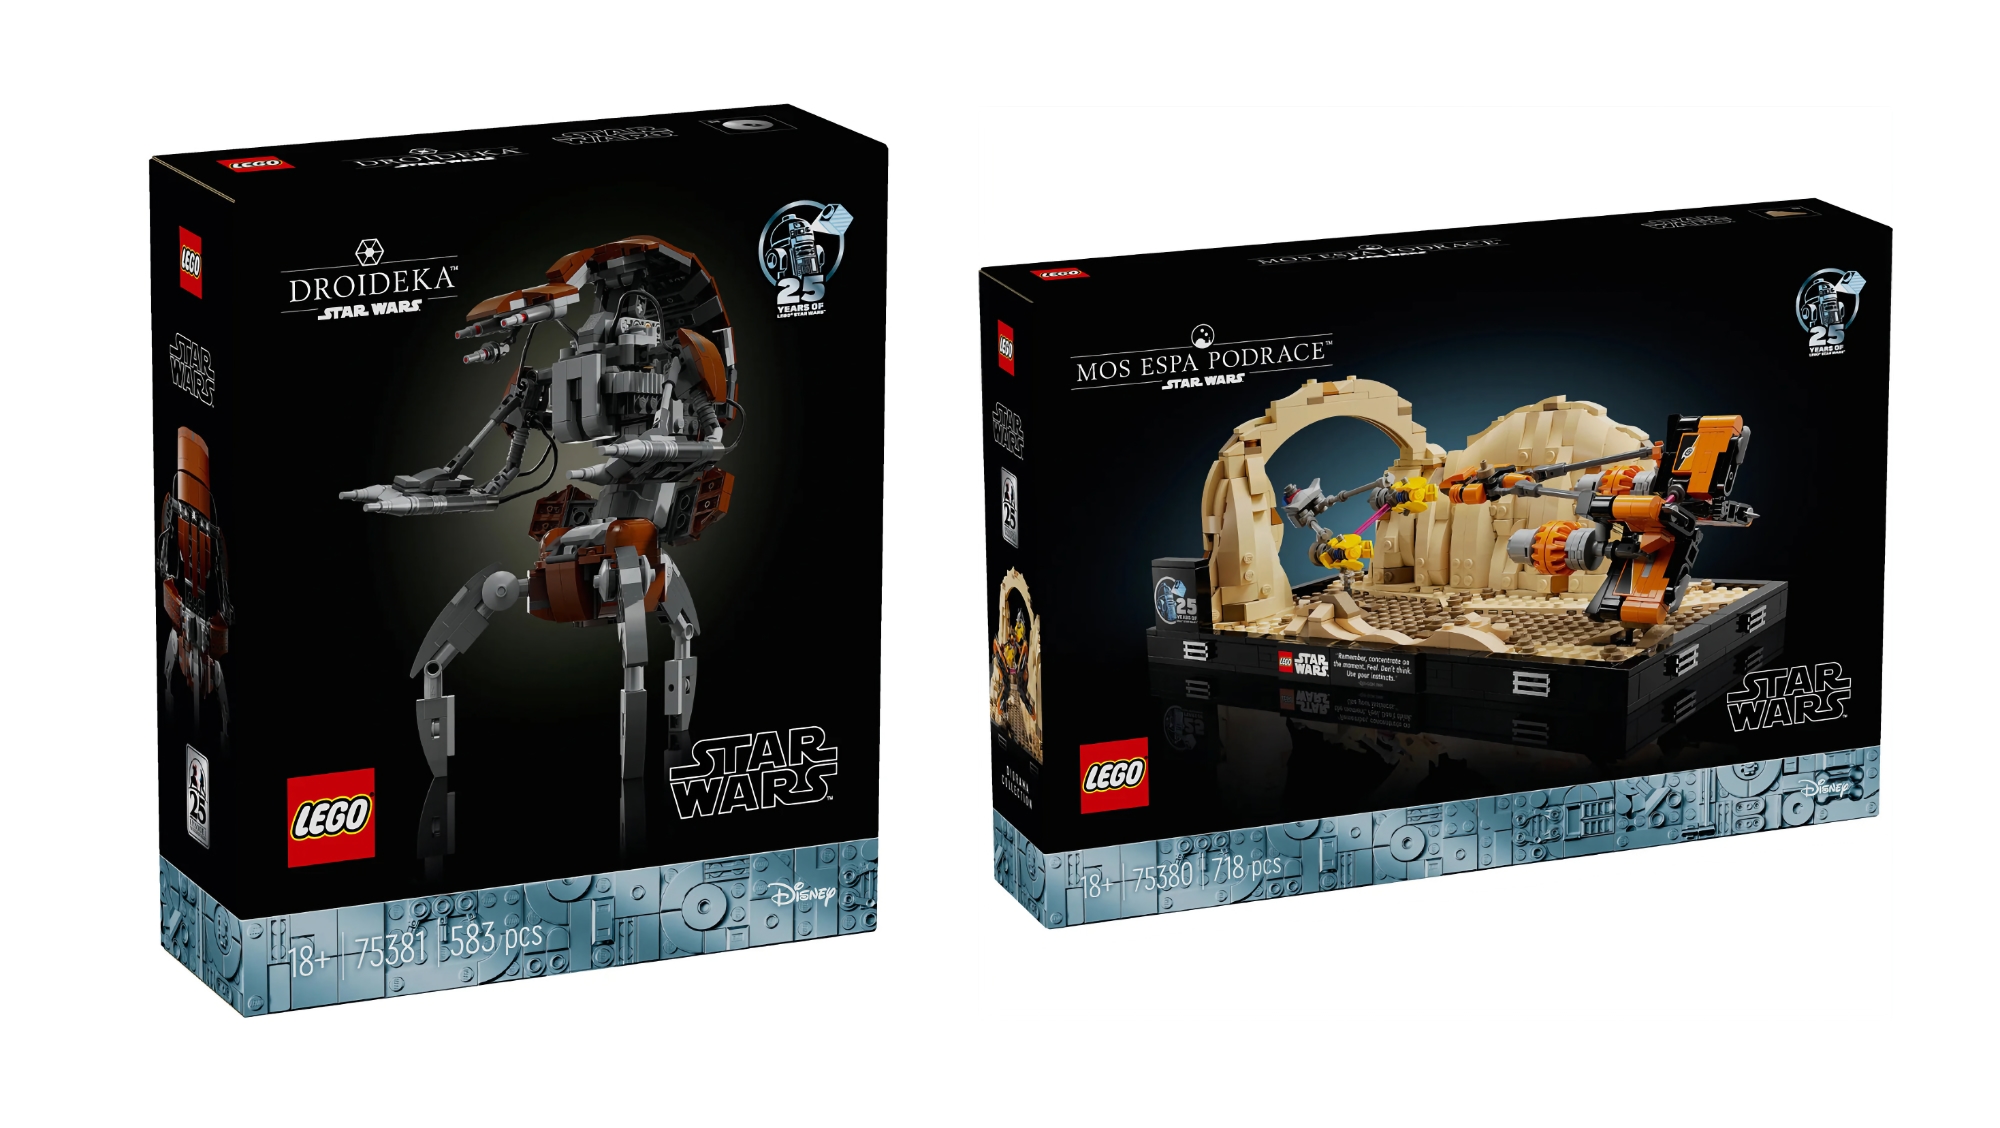 Mos espa Podrace und Droideka: LEGO veröffentlicht im Mai zwei neue Sets für Star Wars Fans